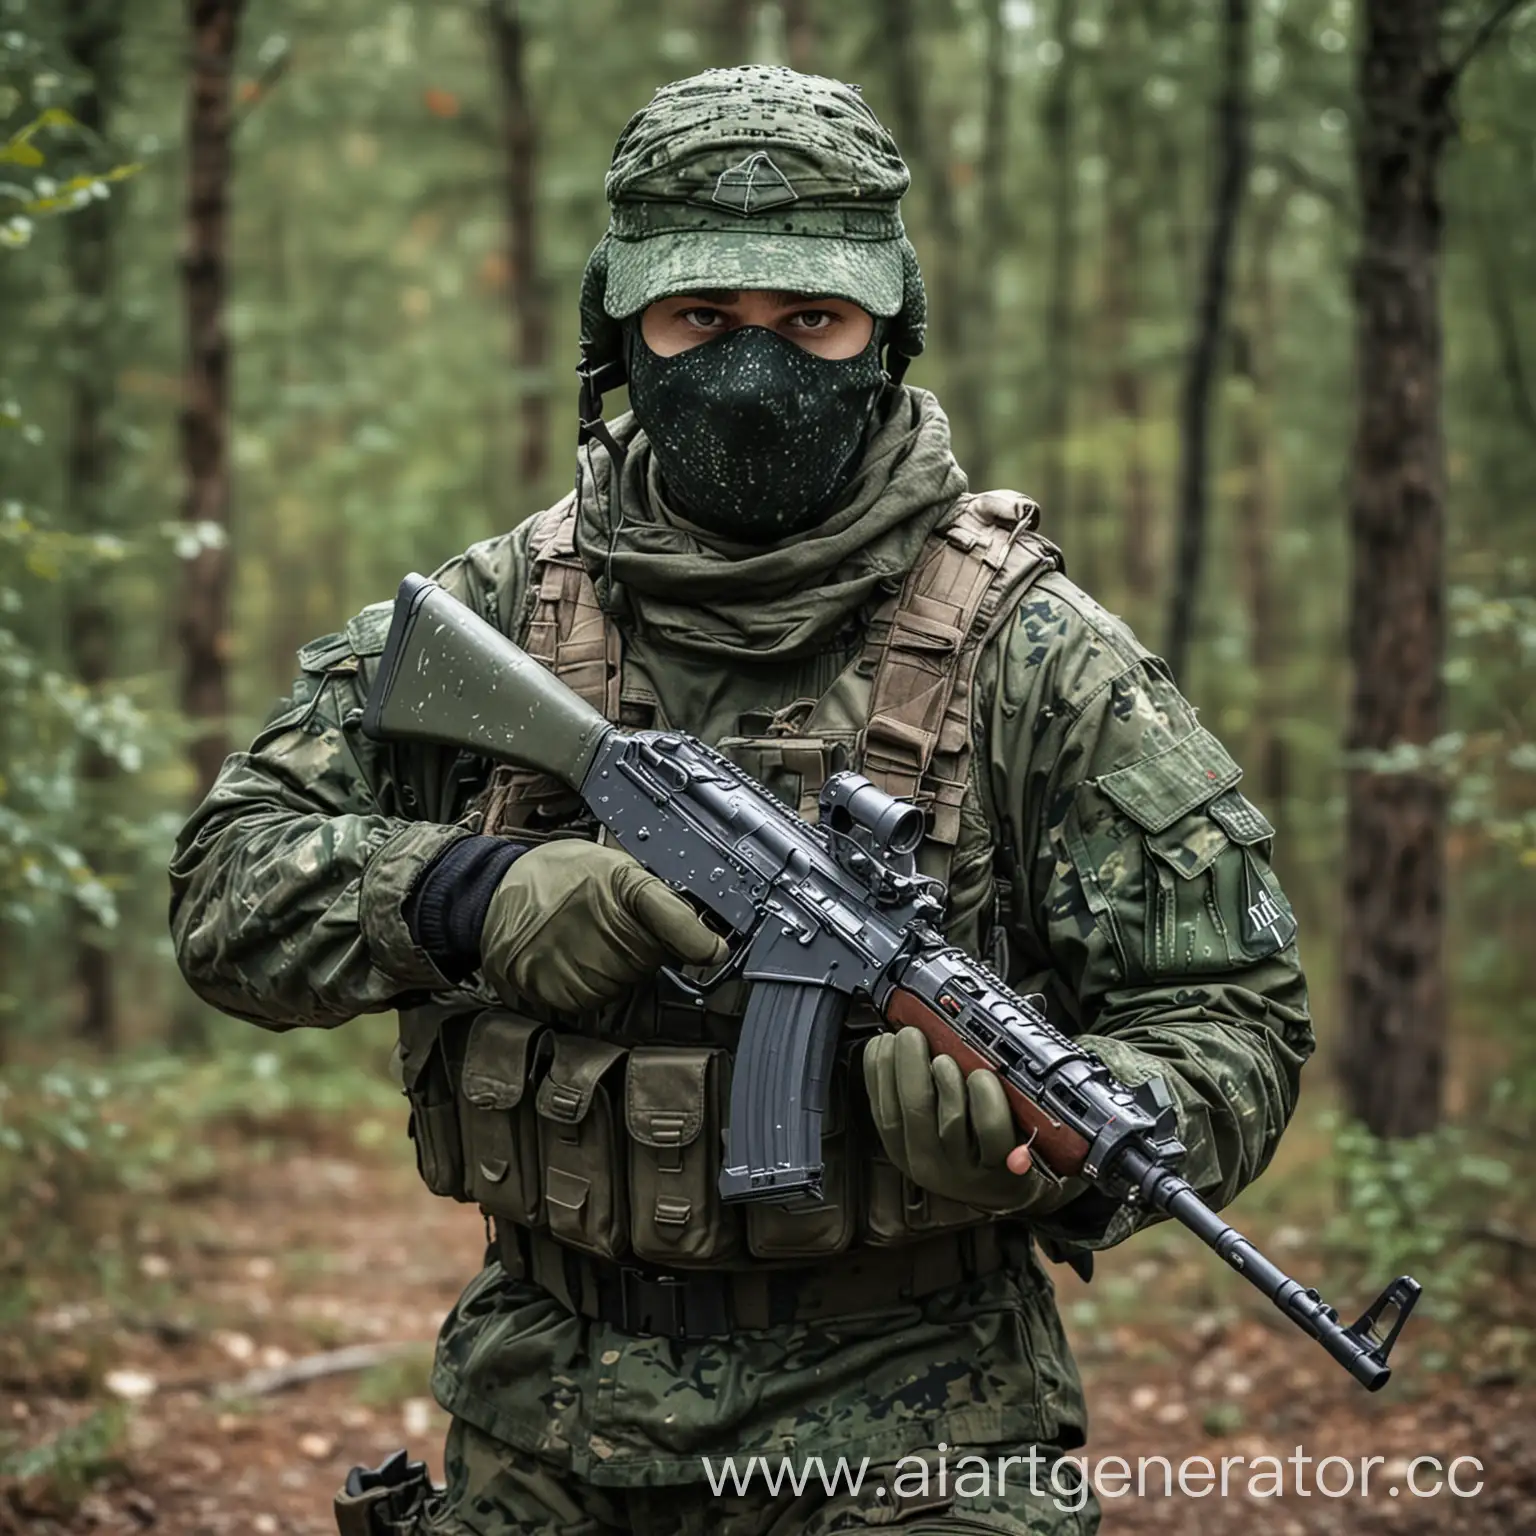 Наёмник в лесу в зелёной военной форме с камуфляжем "пиксель", в рук автомат АК-74М, руки в перчатках, часть лица закрыто маской, в кармане лежит рация. (Реалистичное, детализированное)